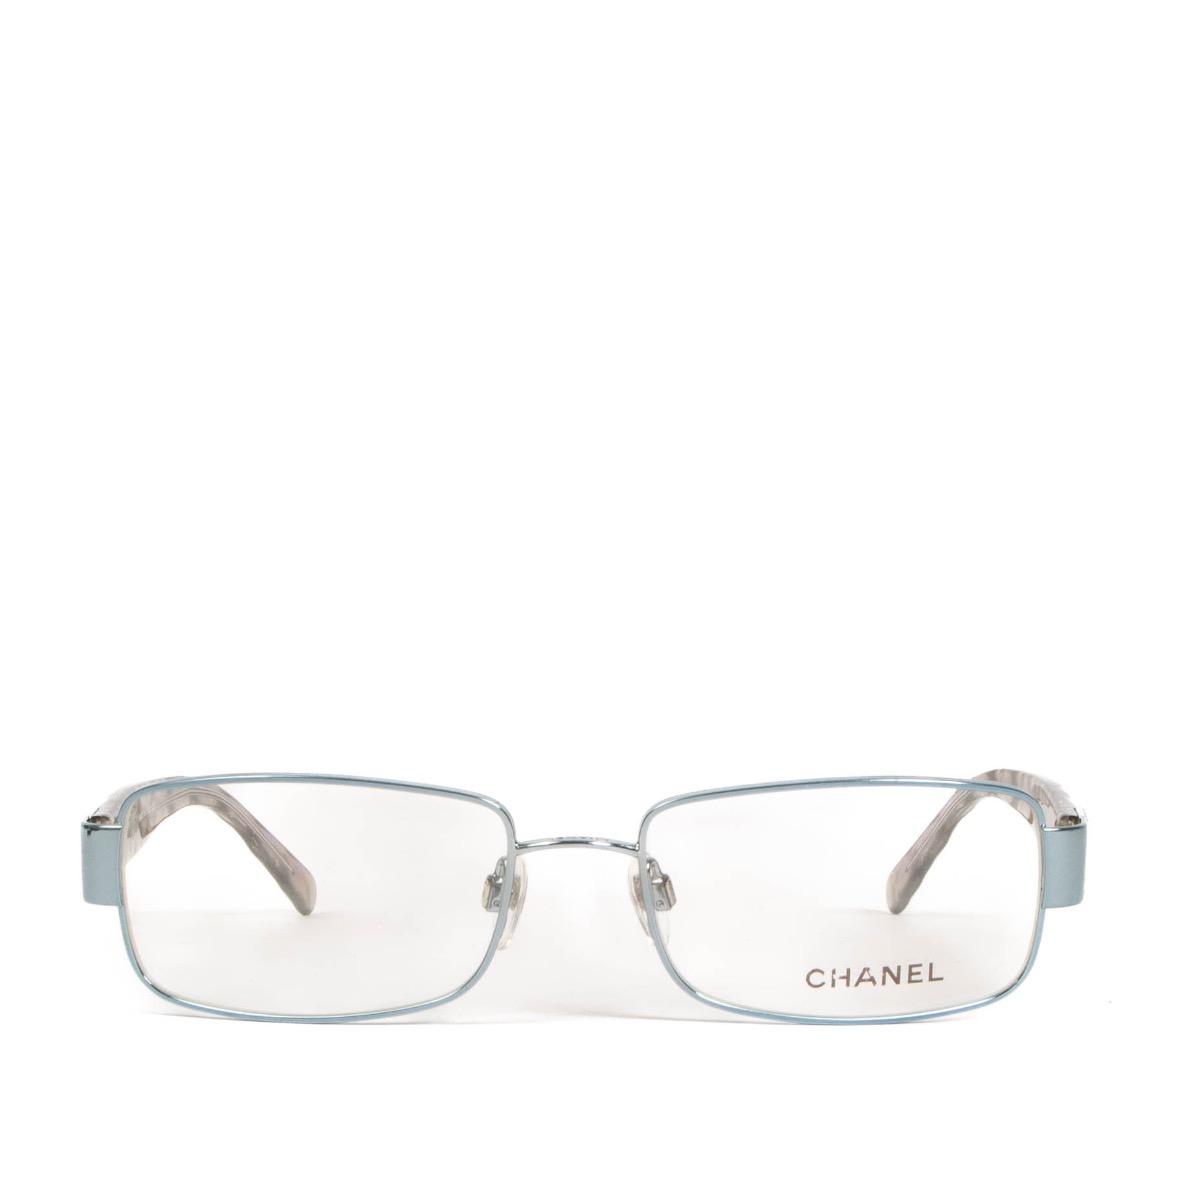 chanel new glasses frames